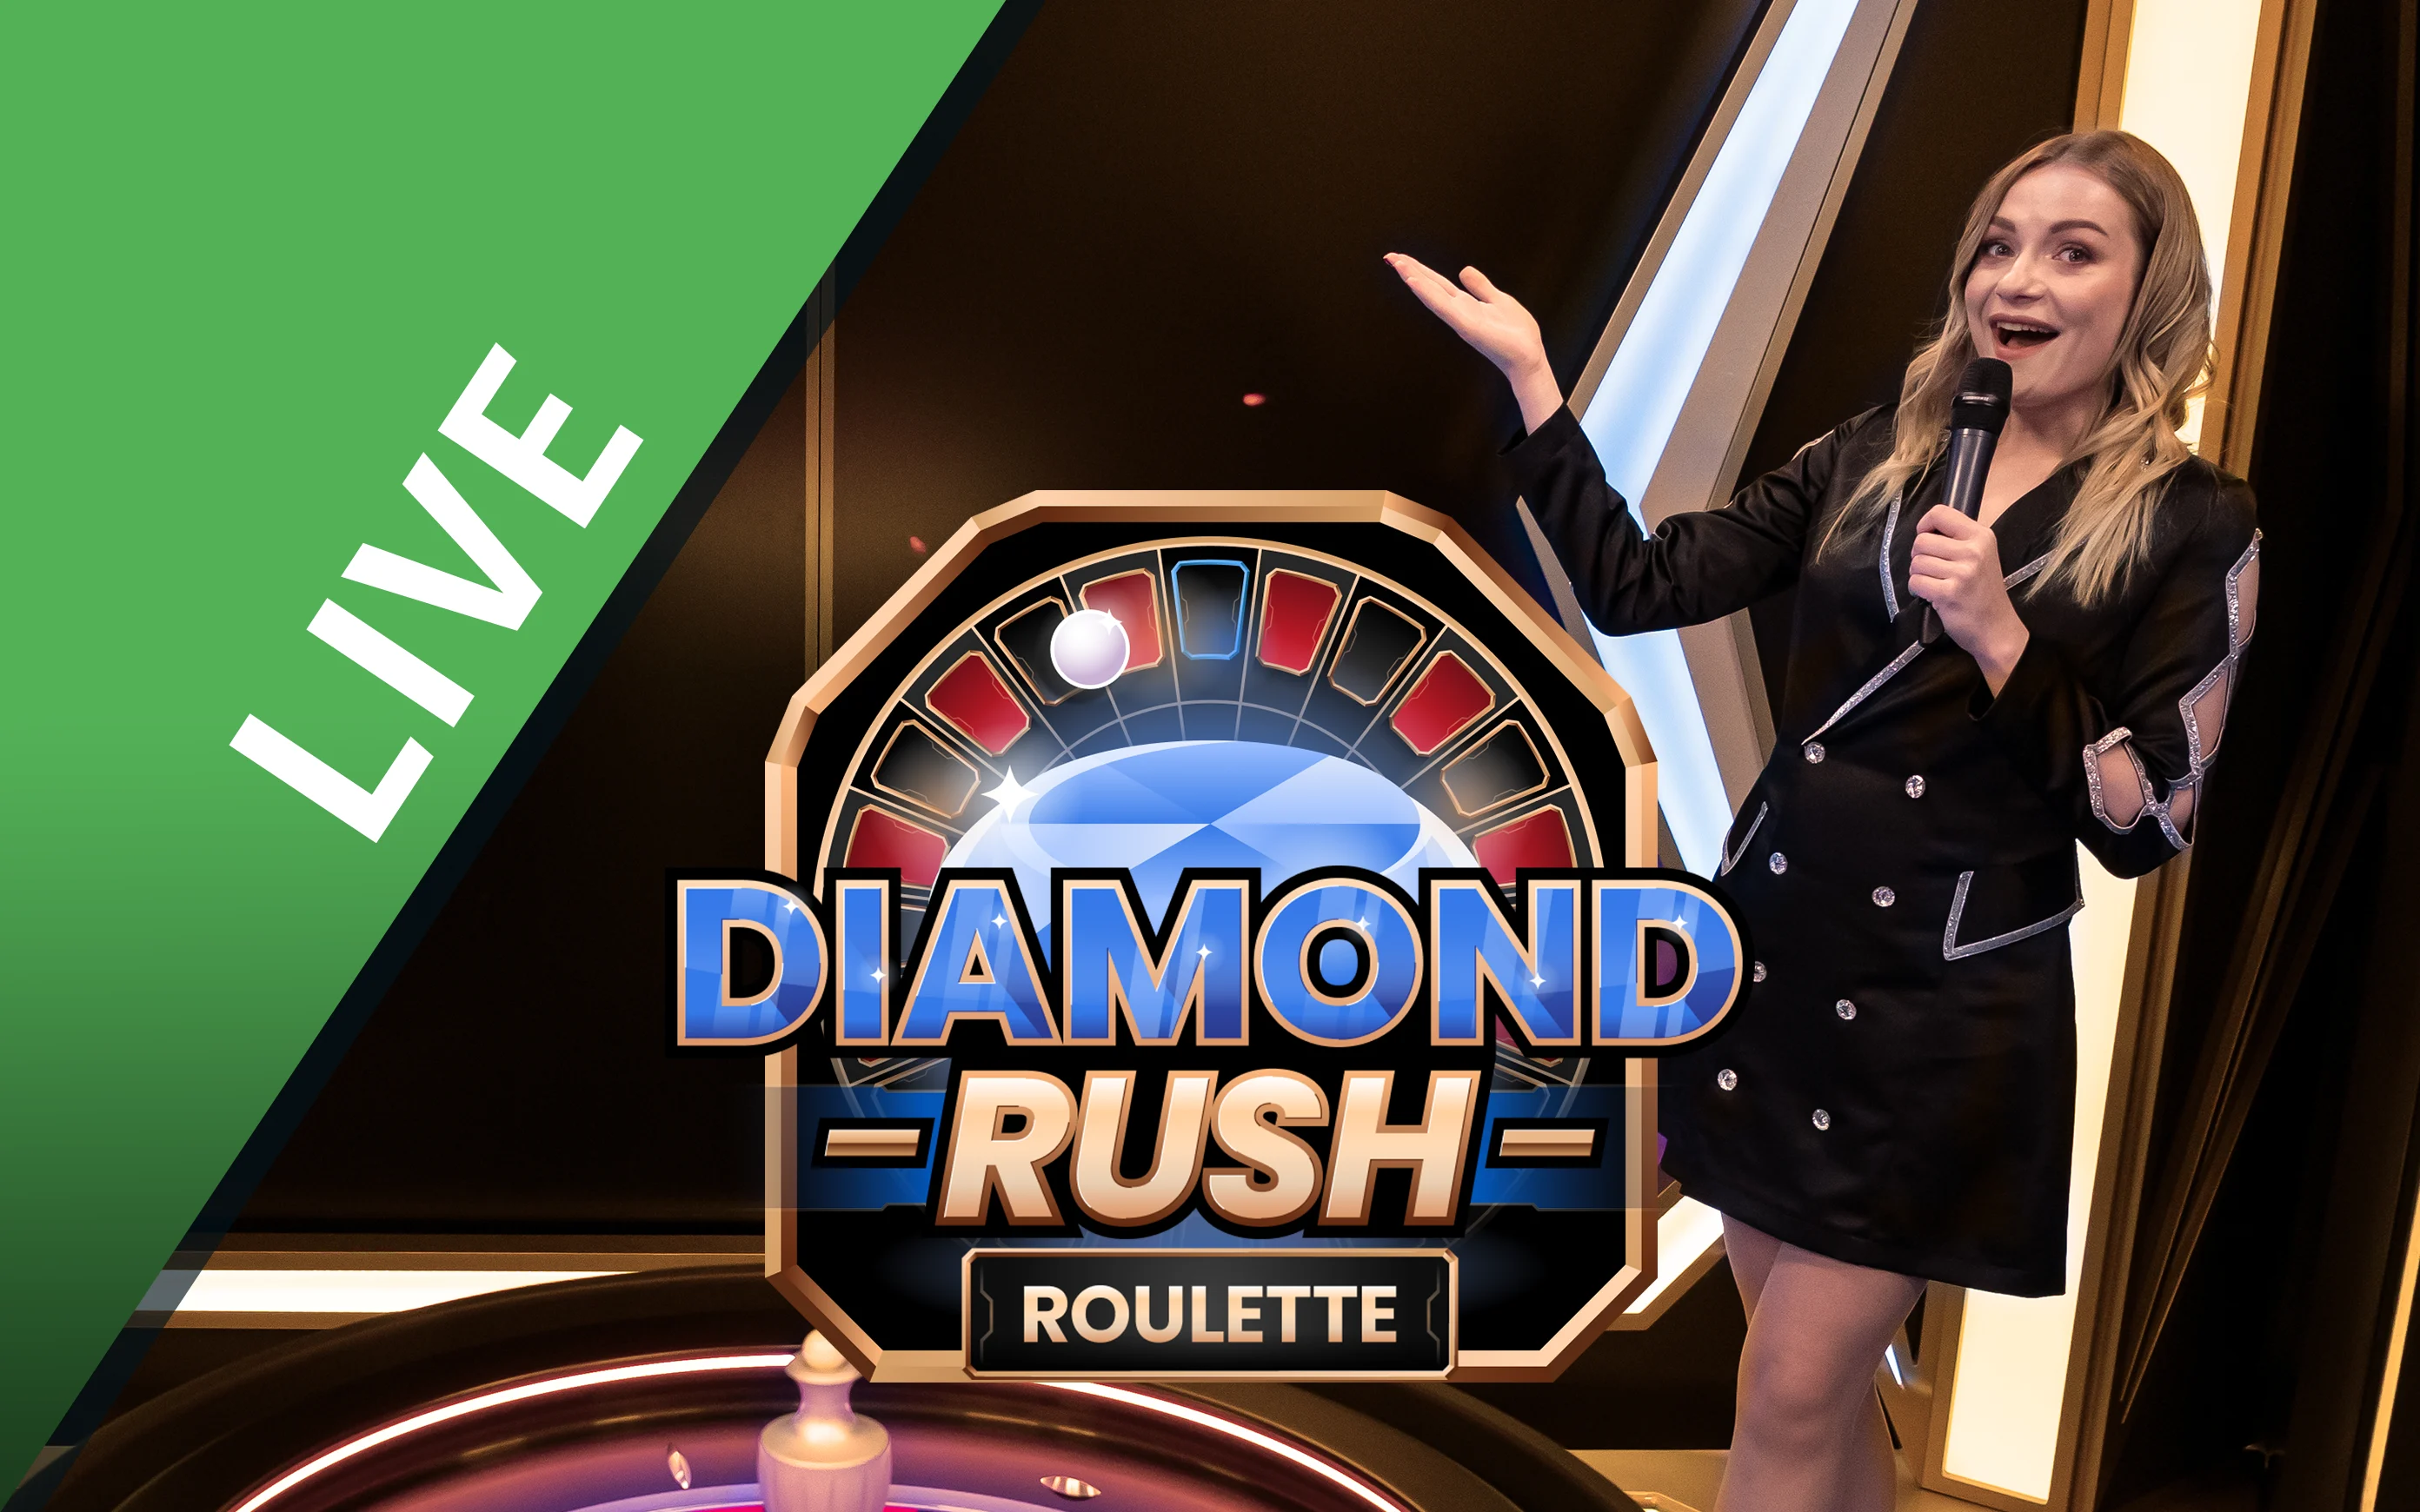 Play Diamond Rush Roulette on Starcasino.be online casino